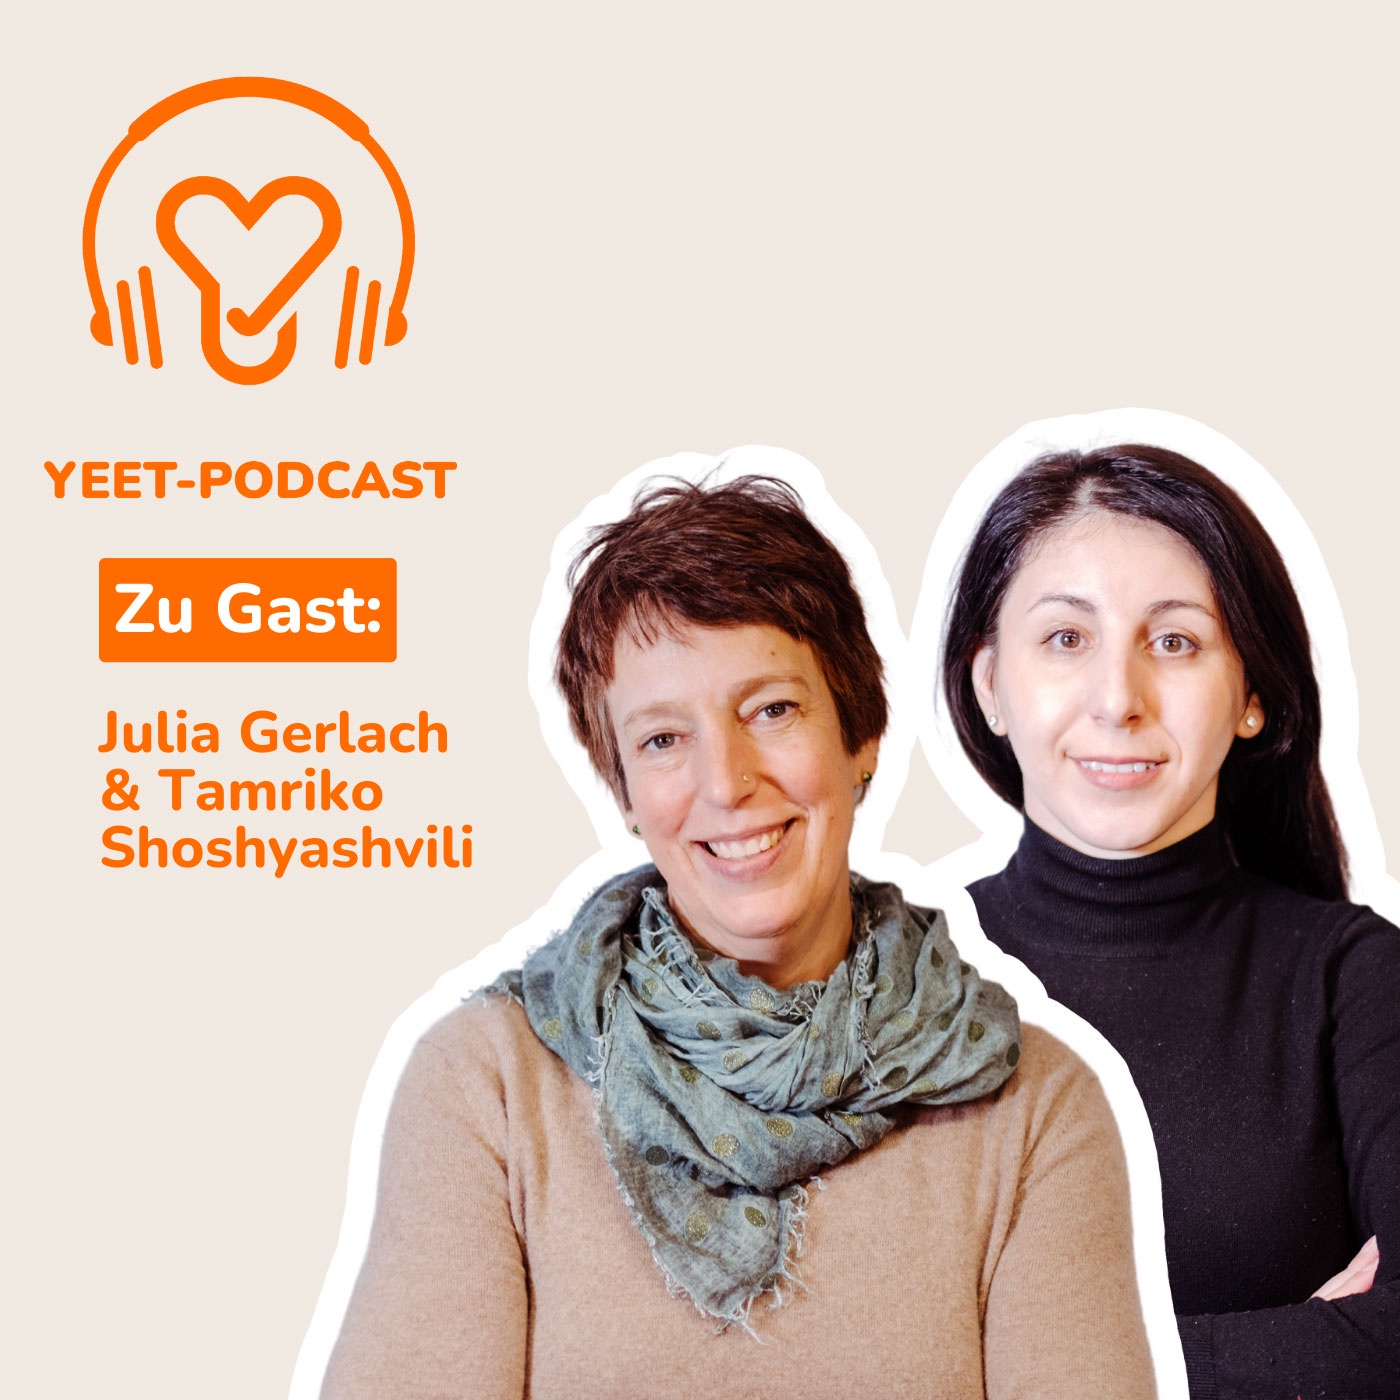 Zielgruppe: Geflüchtete in Deutschland - mit Julia Gerlach und Tamriko Shoshyashvili